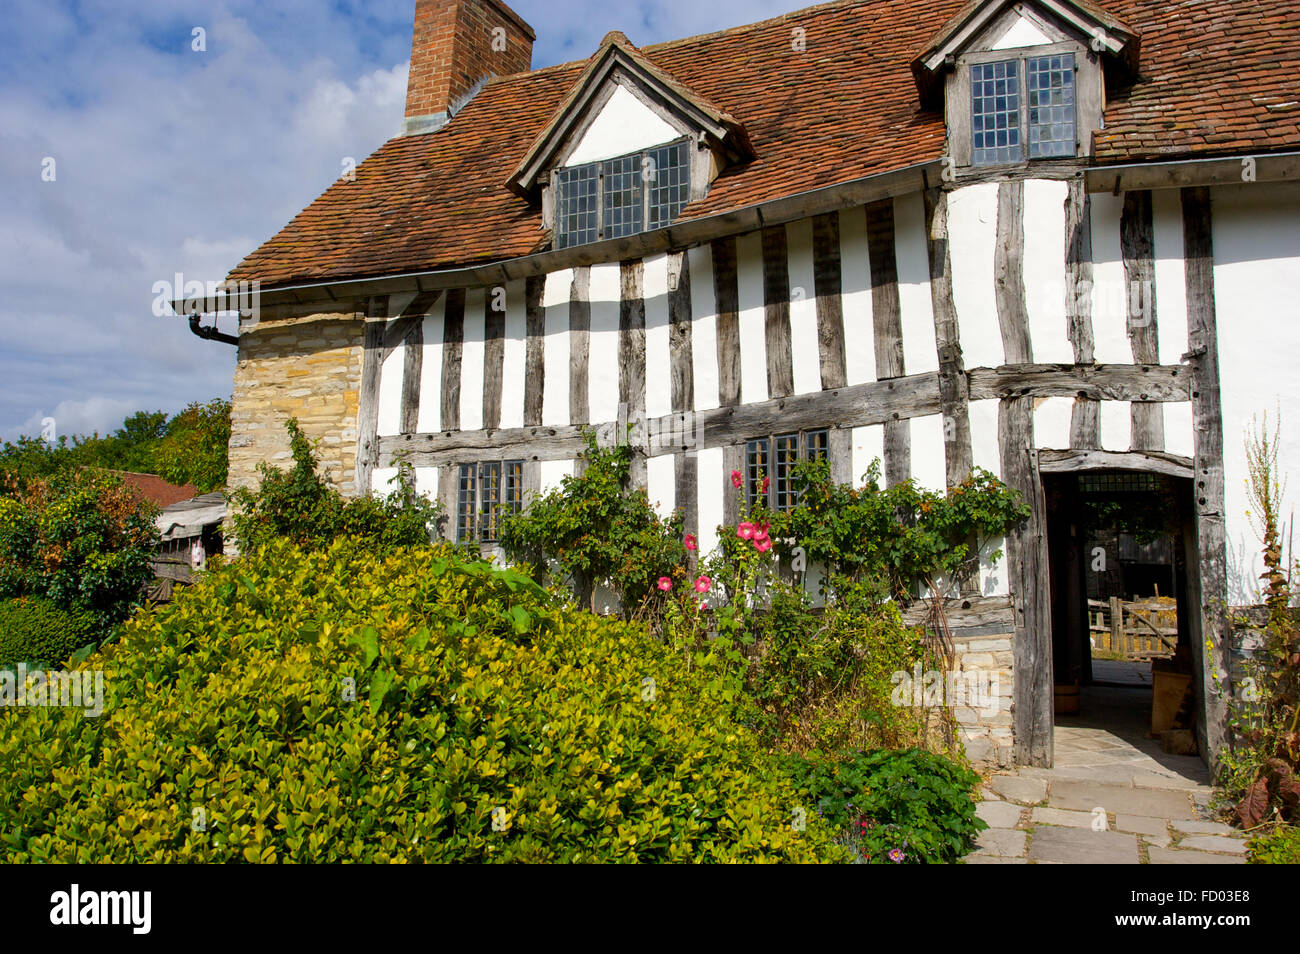 Mary Arden’s Farm una vez fue la casa de William Shakespeare en Stratford-upon-Avon, Reino Unido Foto de stock